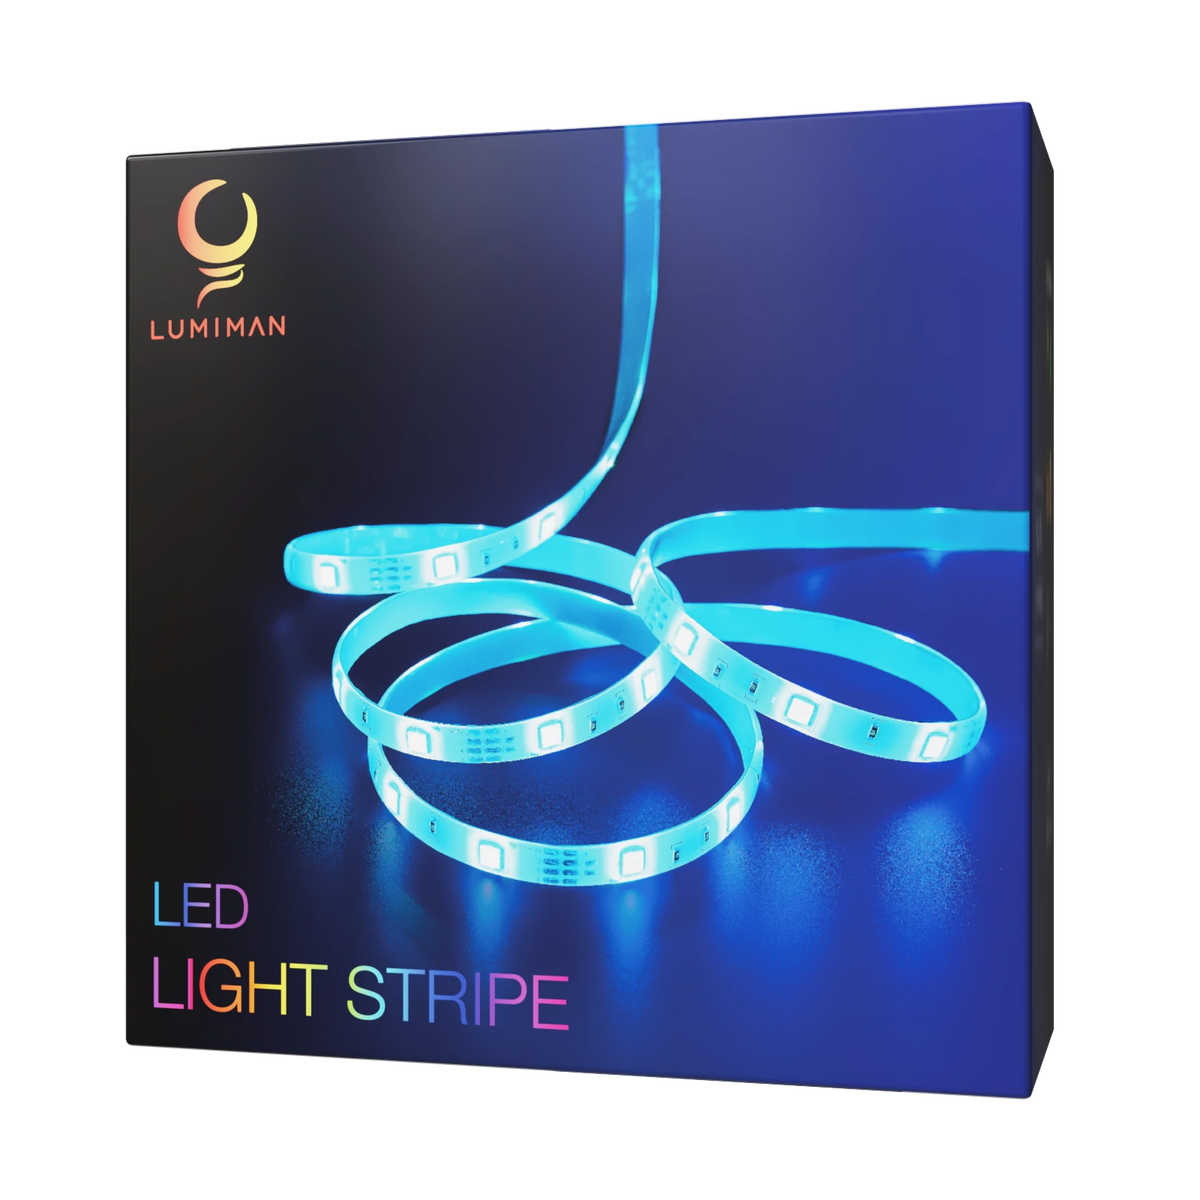 20 ft. Smart Color Chasing LED Strip Light